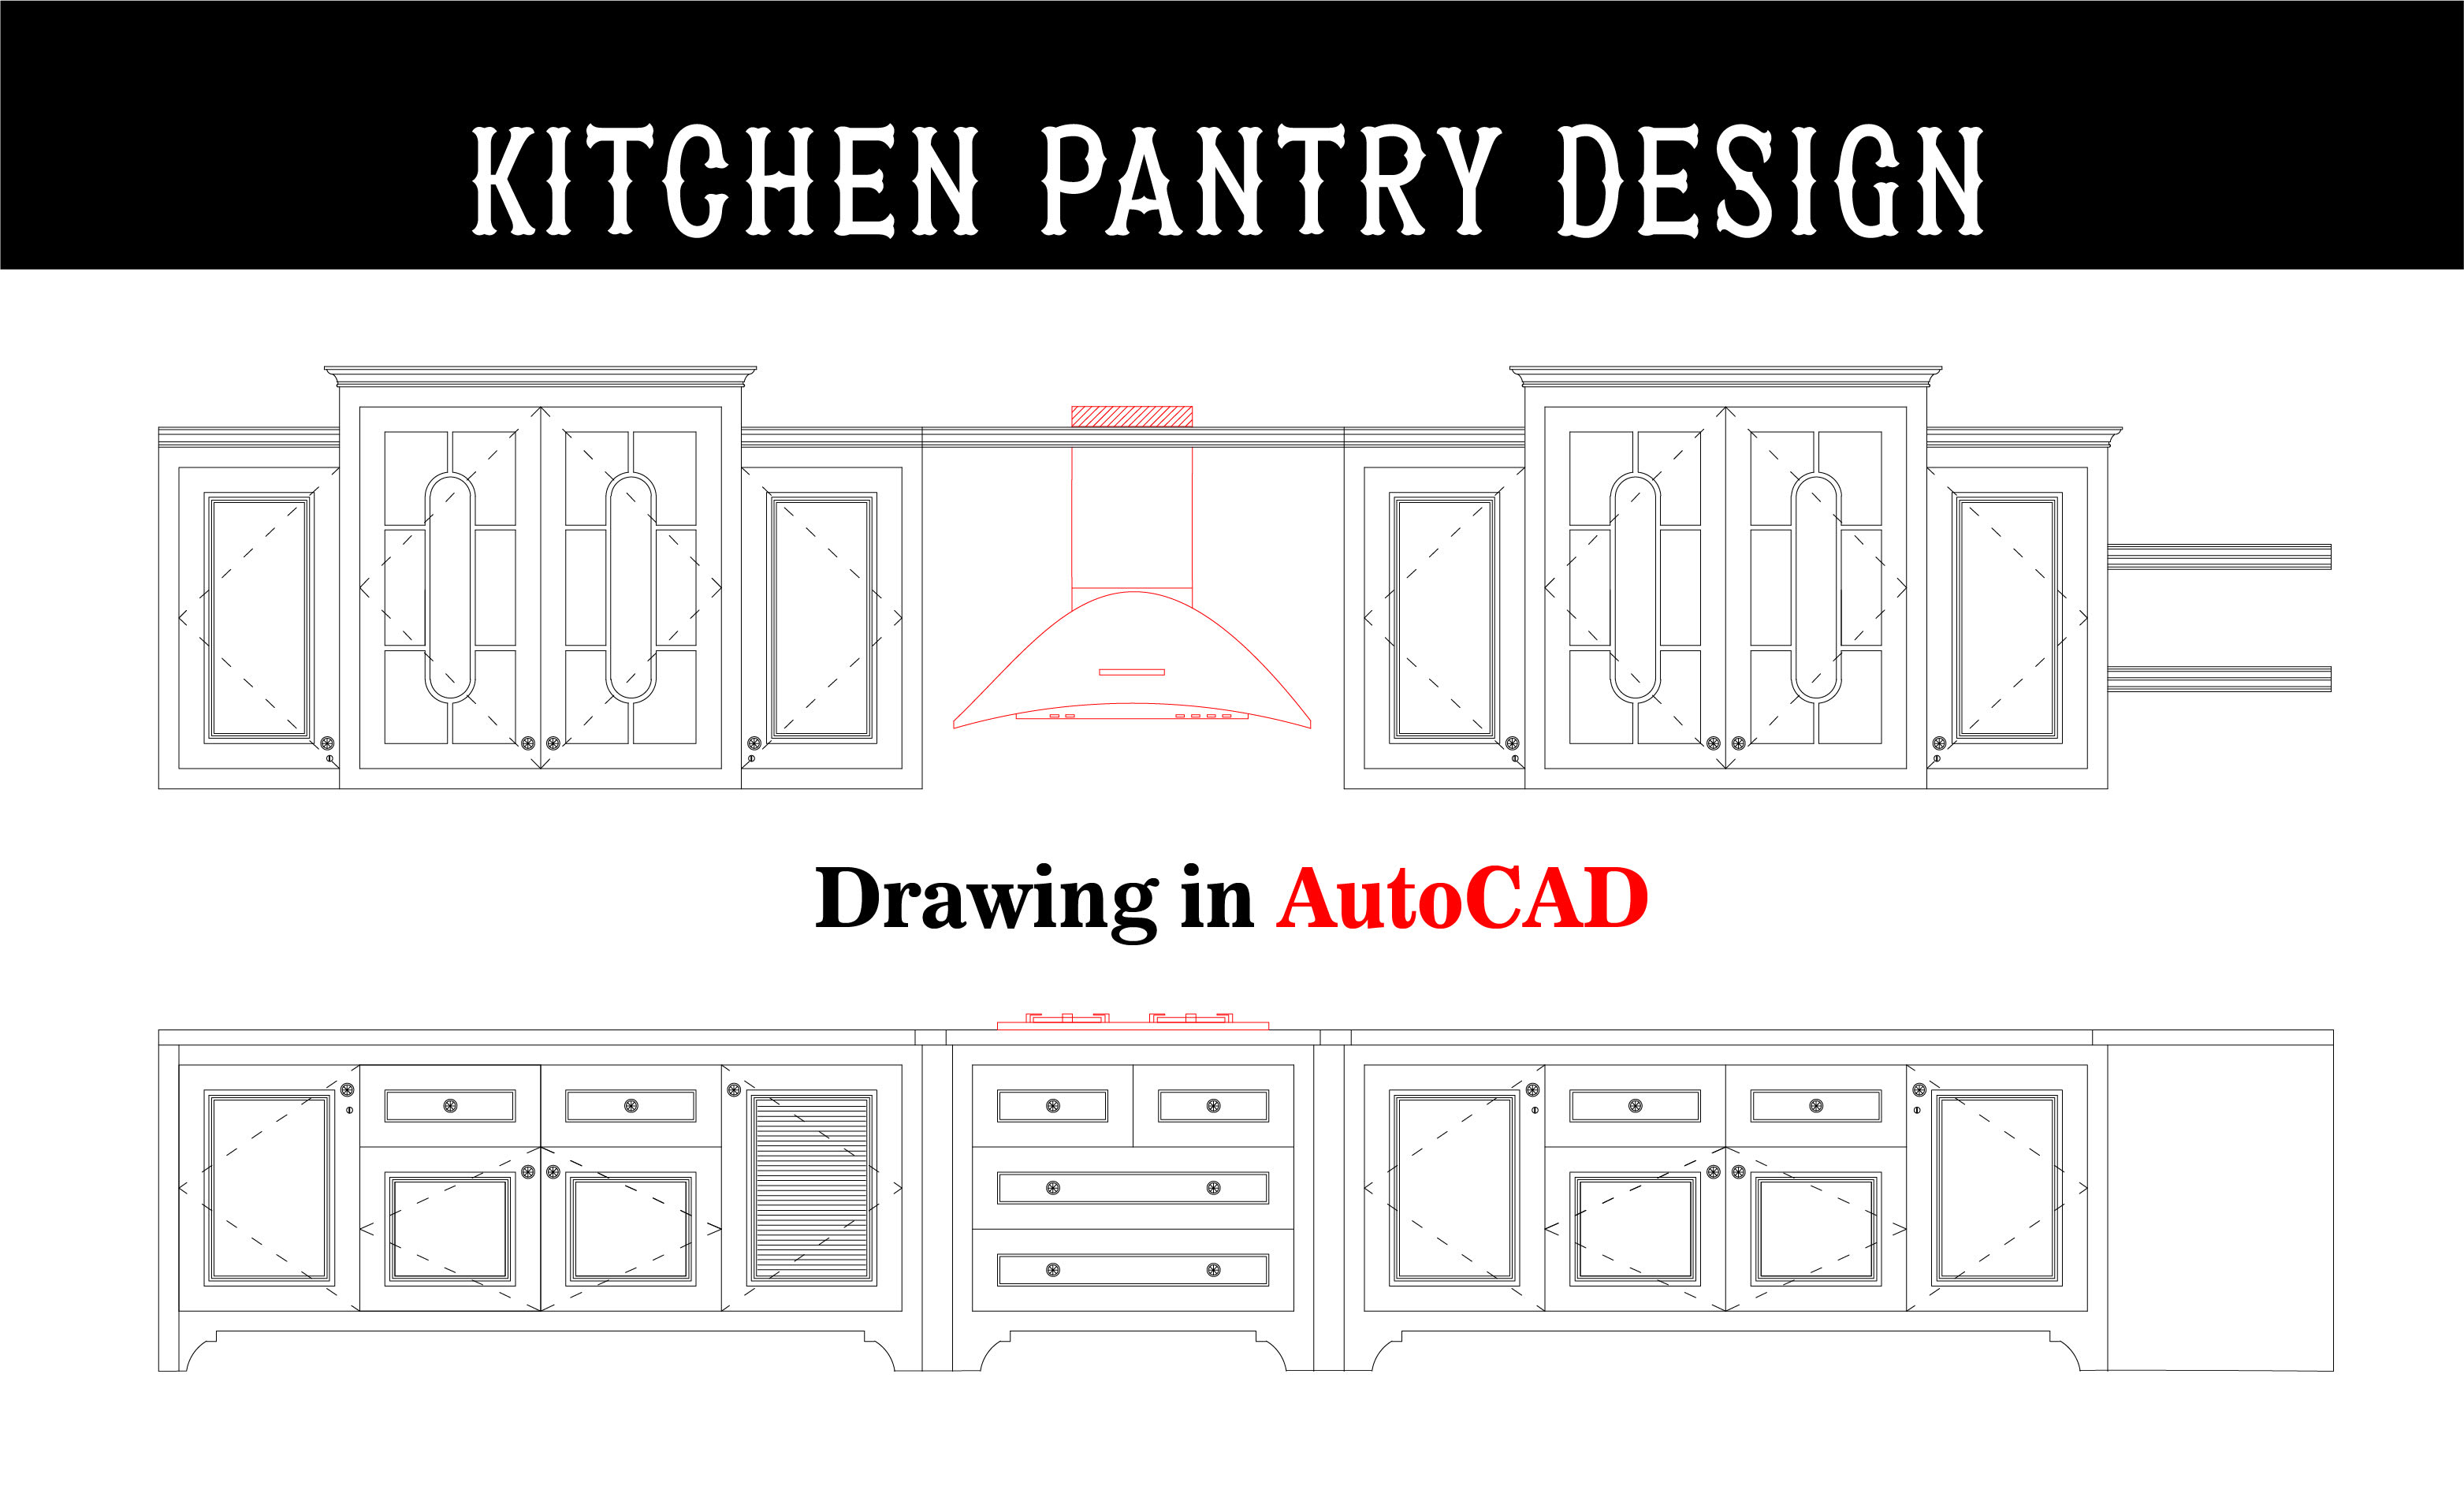 Quesera, con original diseño de dibujo Kitchen Pantry.